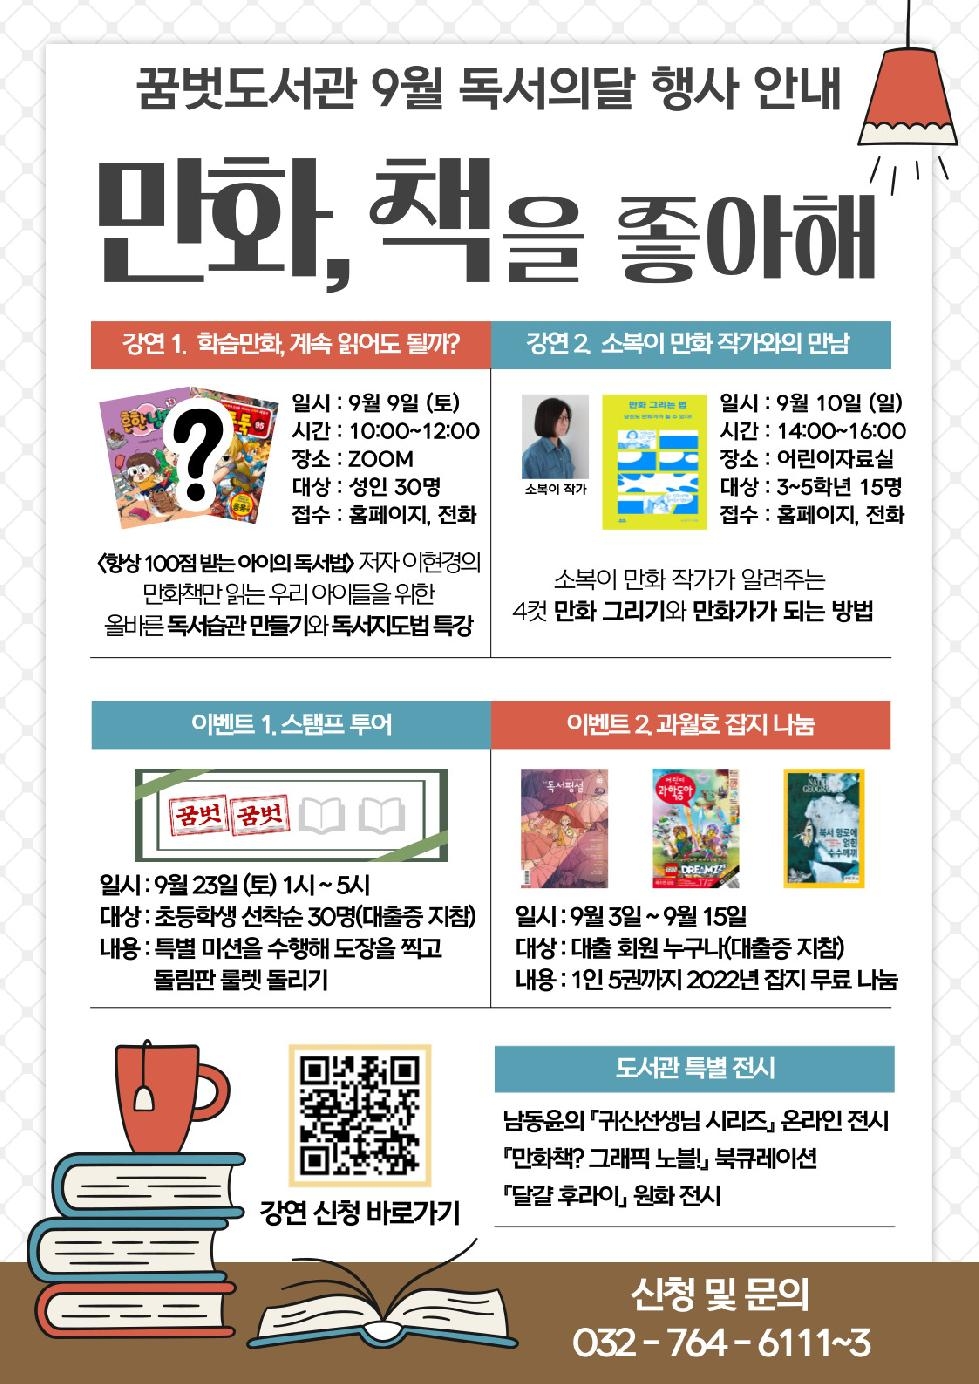 인천 중구 꿈벗도서관, 남녀노소 좋아하는 만화 주제로 ‘독서의 달 행사’ 운영